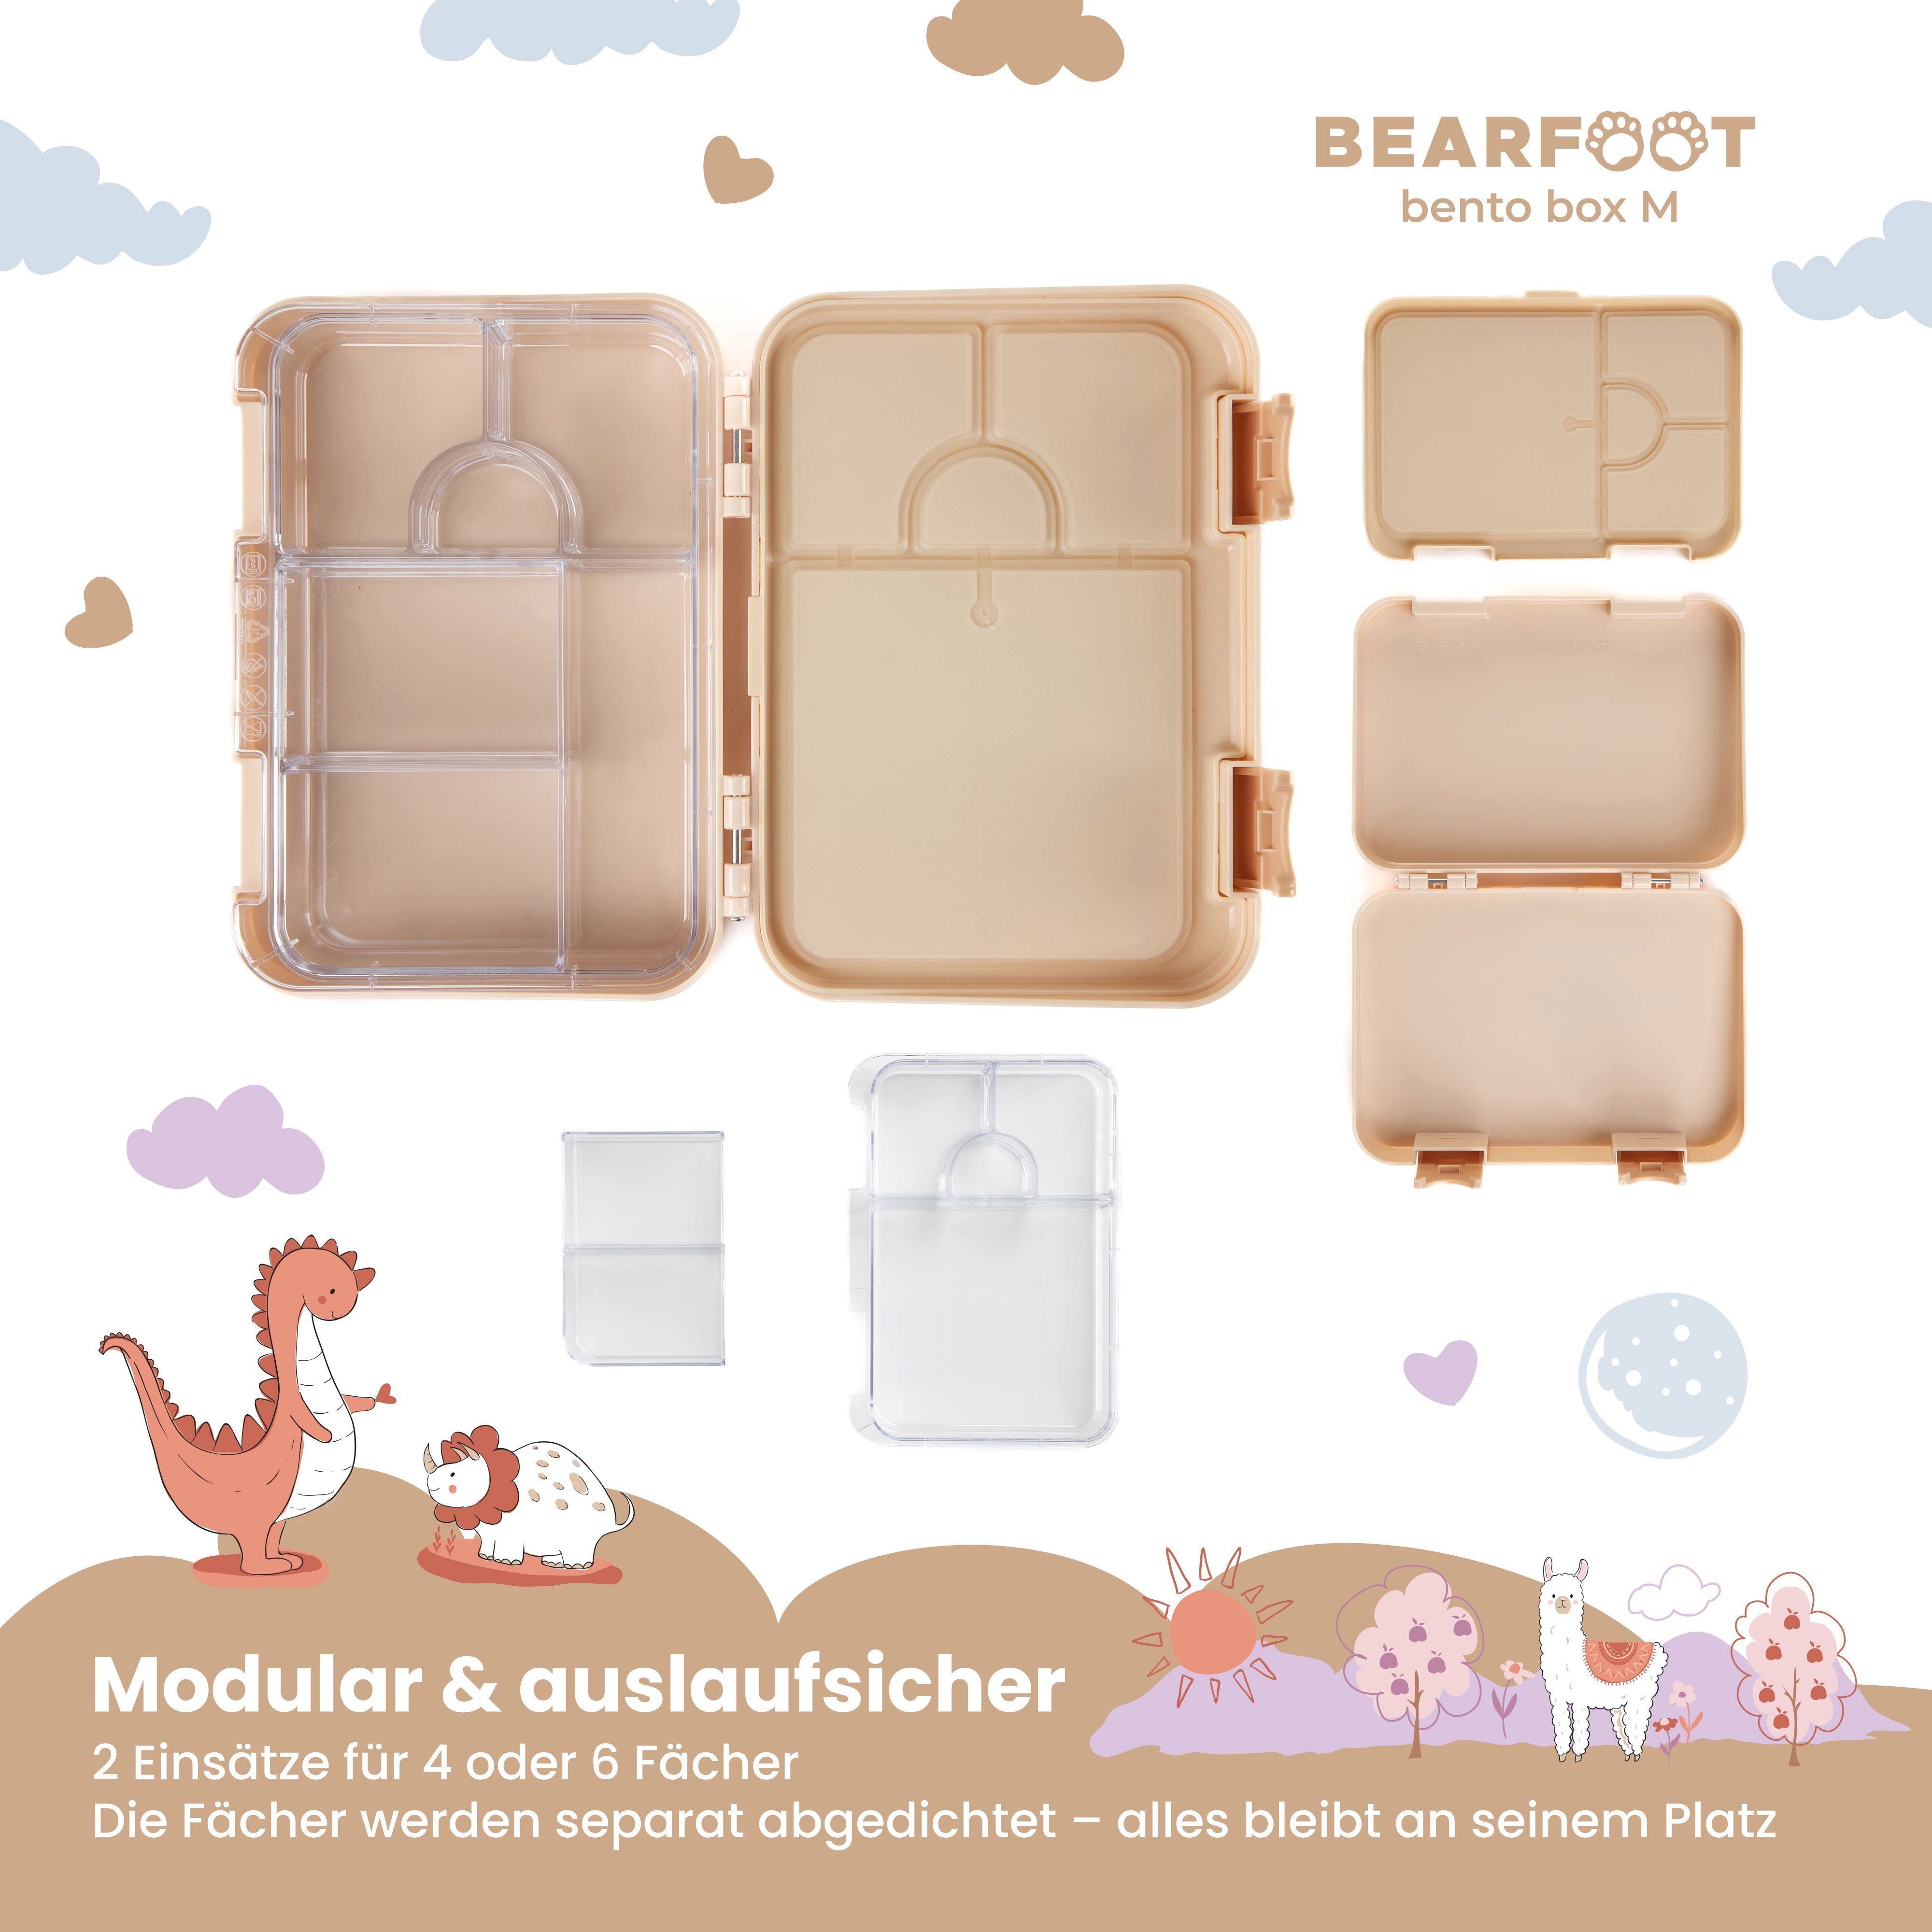 Designs, modular Kinder box Fächern, handgezeichnete Lunchbox mit Elefanten, Brotdose Ambulanzelefanten-braun - Lunchbox, Bento BEARFOOT